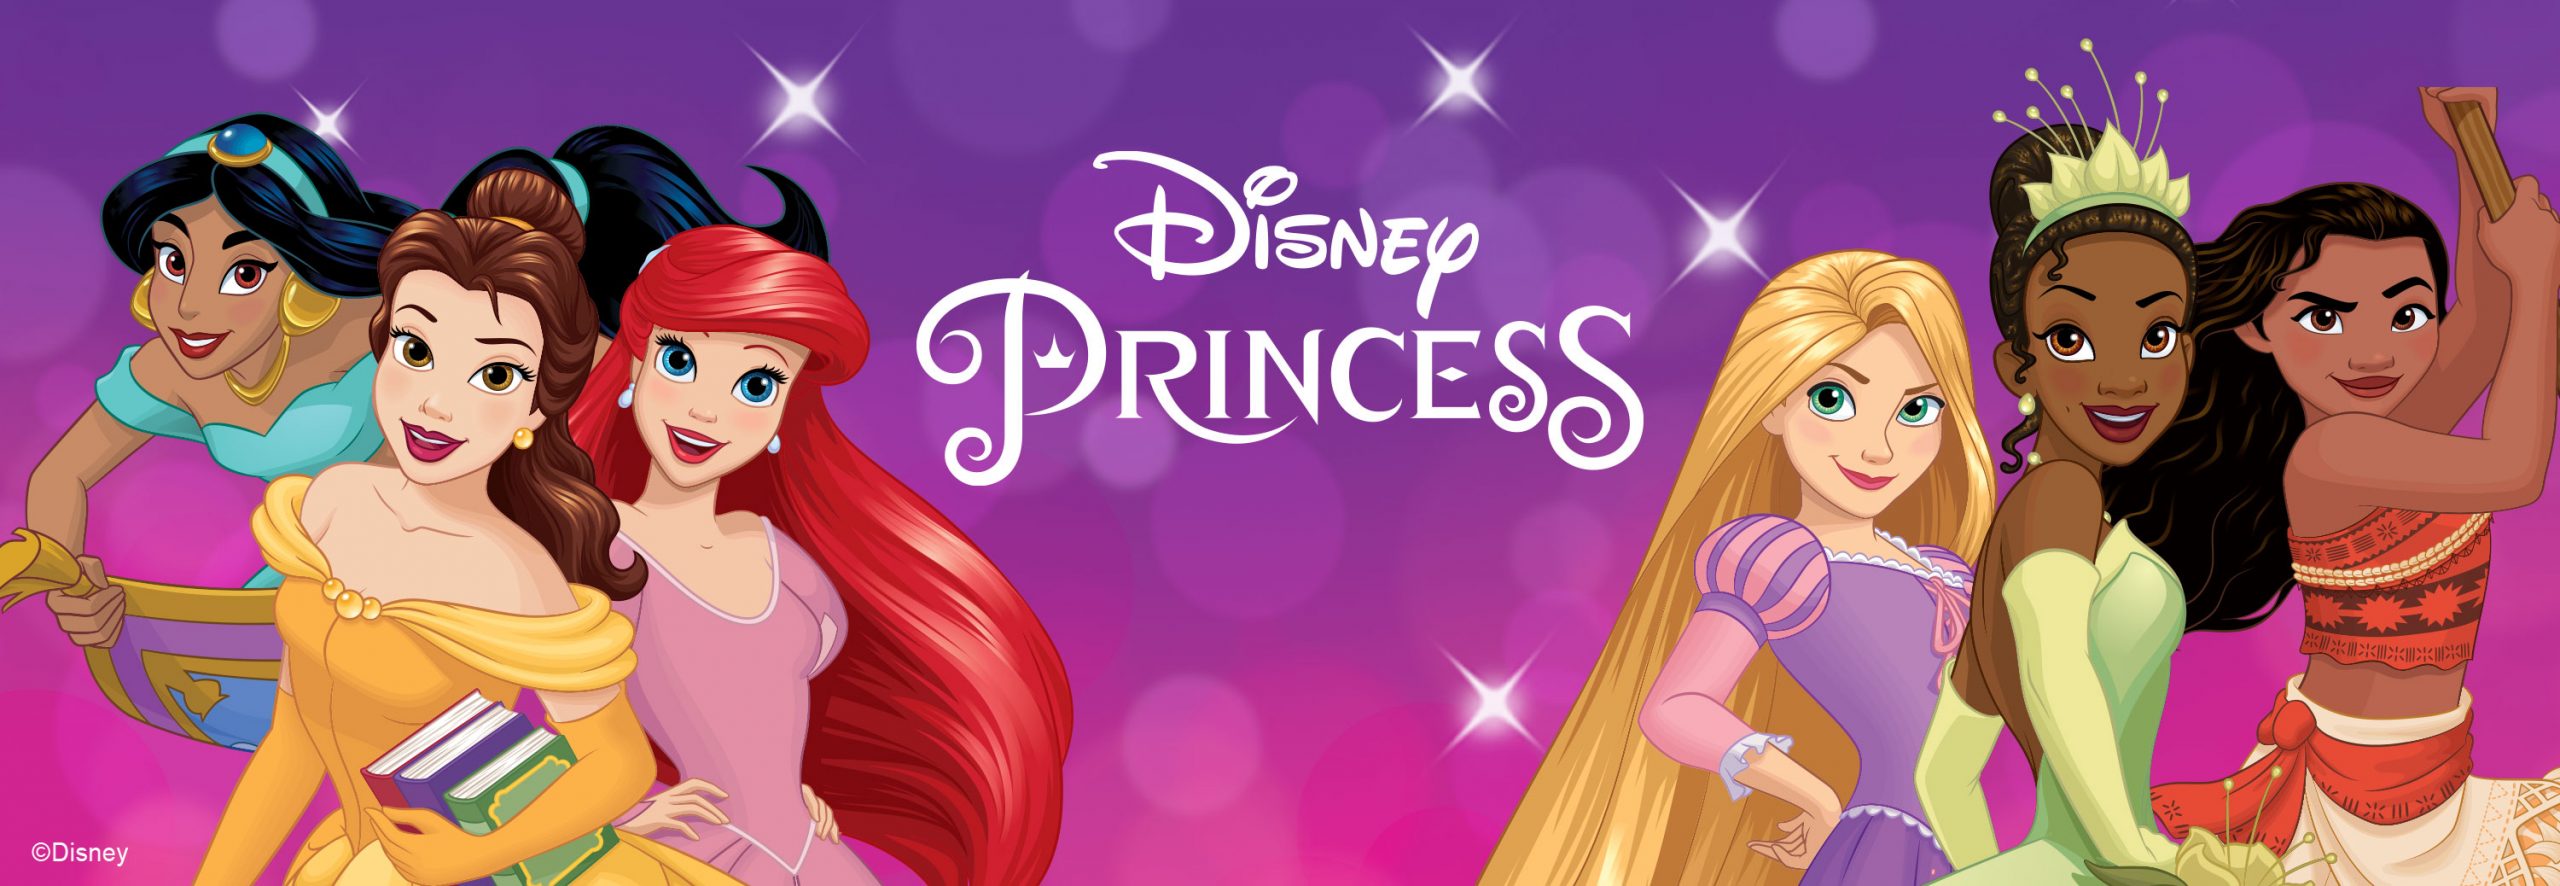 Disney Princess - JAKKS Pacific, Inc.